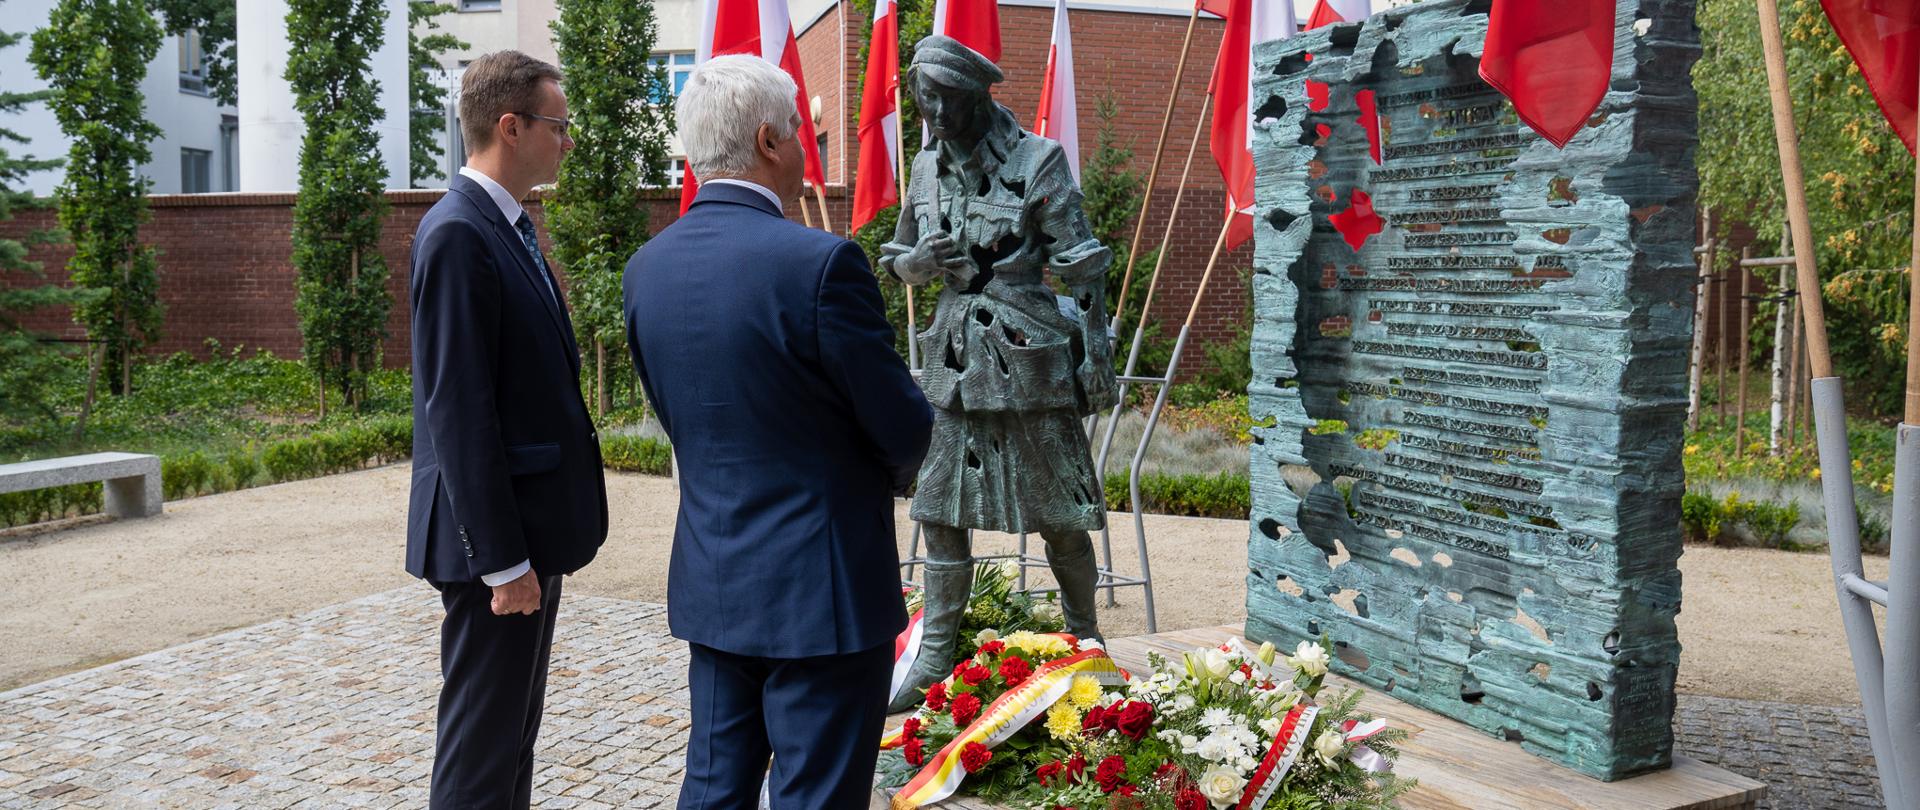 Uroczystości upamiętniające 77. rocznicę śmierci Danuty Siedzikówny "Inki" w Białymstoku